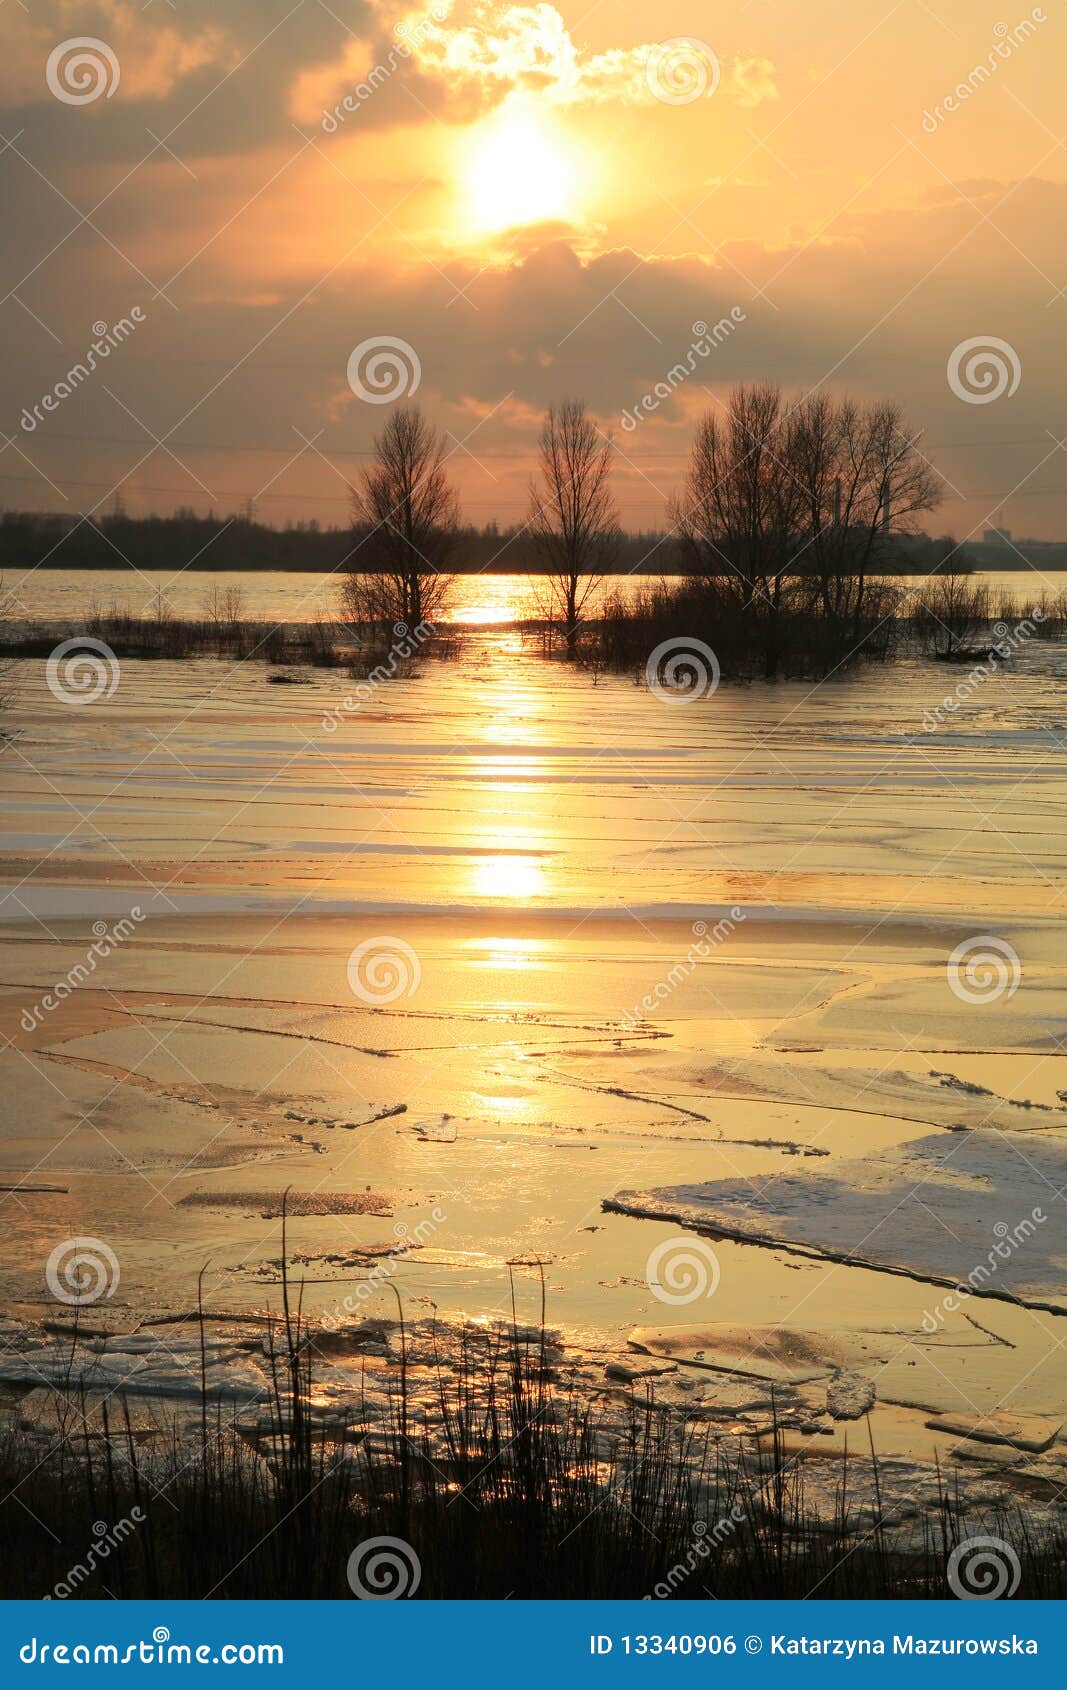 vistula river in poland - sunset.